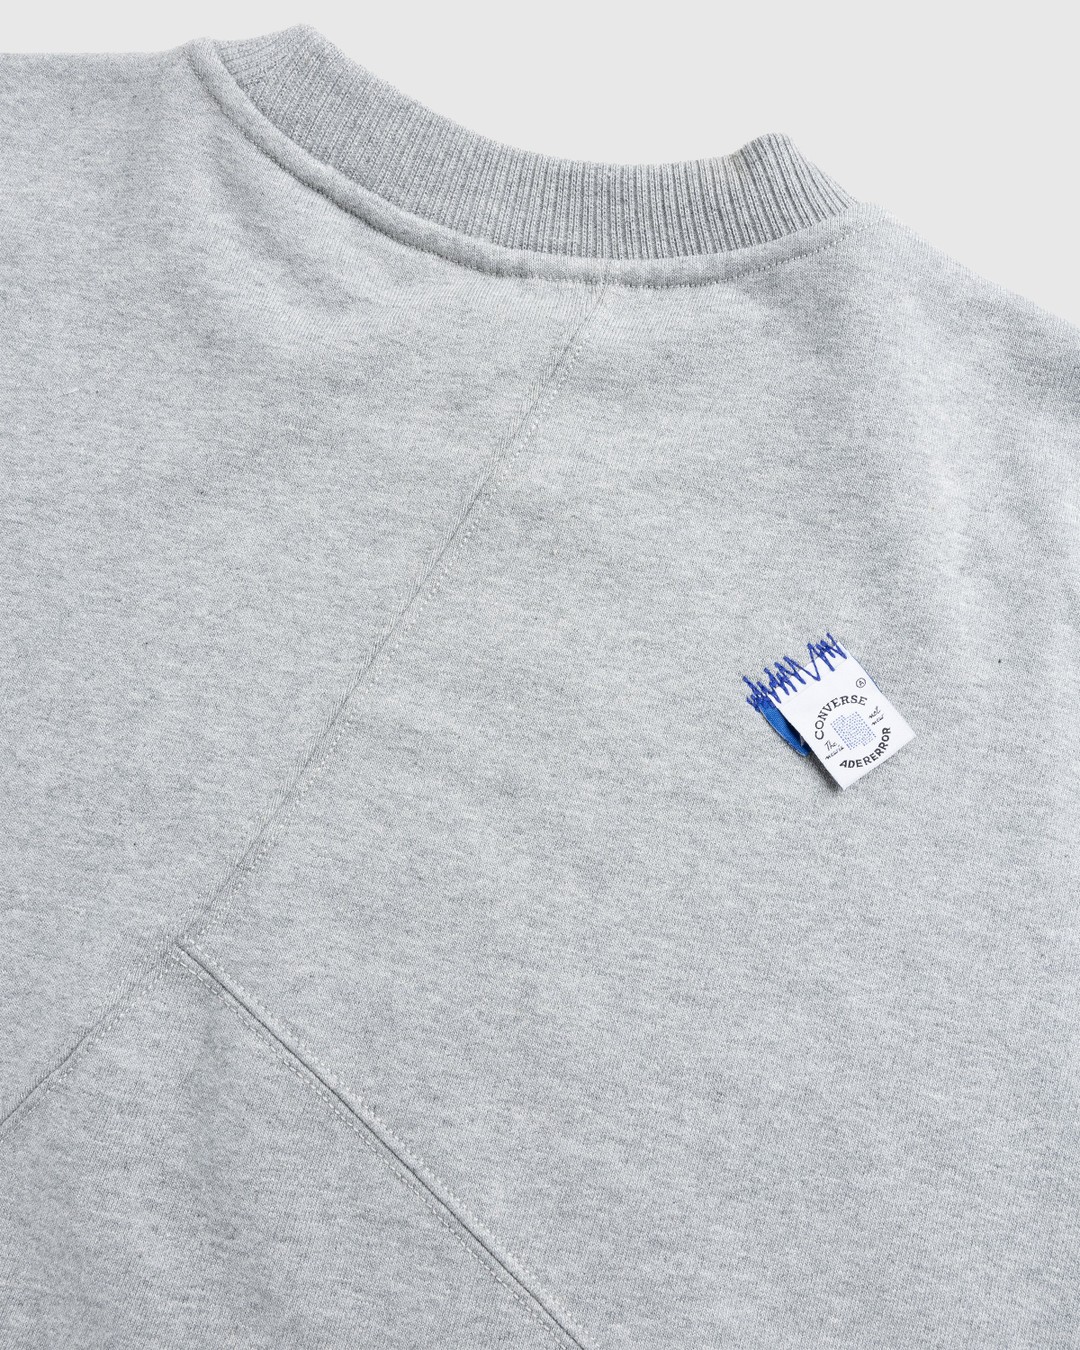 Converse x Ader Error – Shapes Crew Sweatshirt Vintage Grey Heather - Sweats - Grey - Image 6